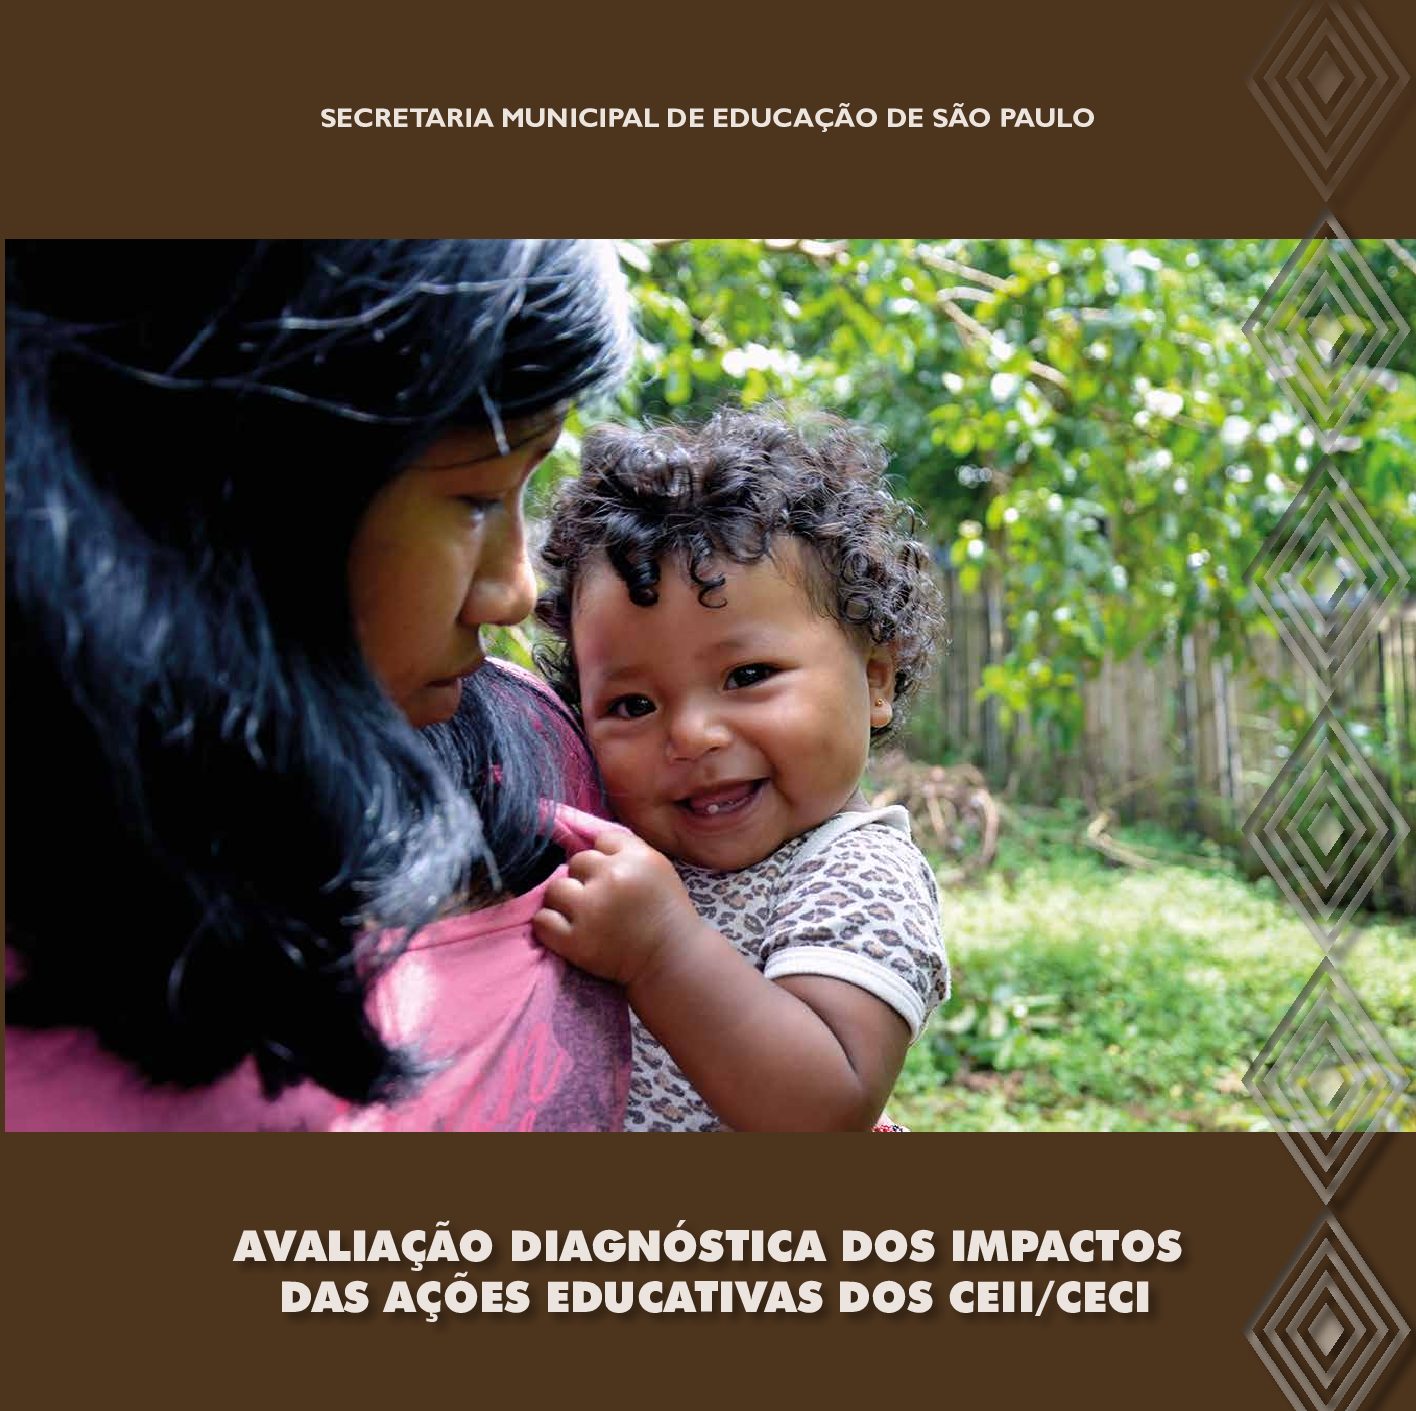 Relatório com resultados consolidados de uma pesquisa documental e etnográfica, realizada entre julho de 2015 e abril de 2016, sobre os impactos das ações educativas dos Centros de Educação Infantil Indígena - CEII, vinculados aos Centros de Educação e Cultura Indígena - CECI.